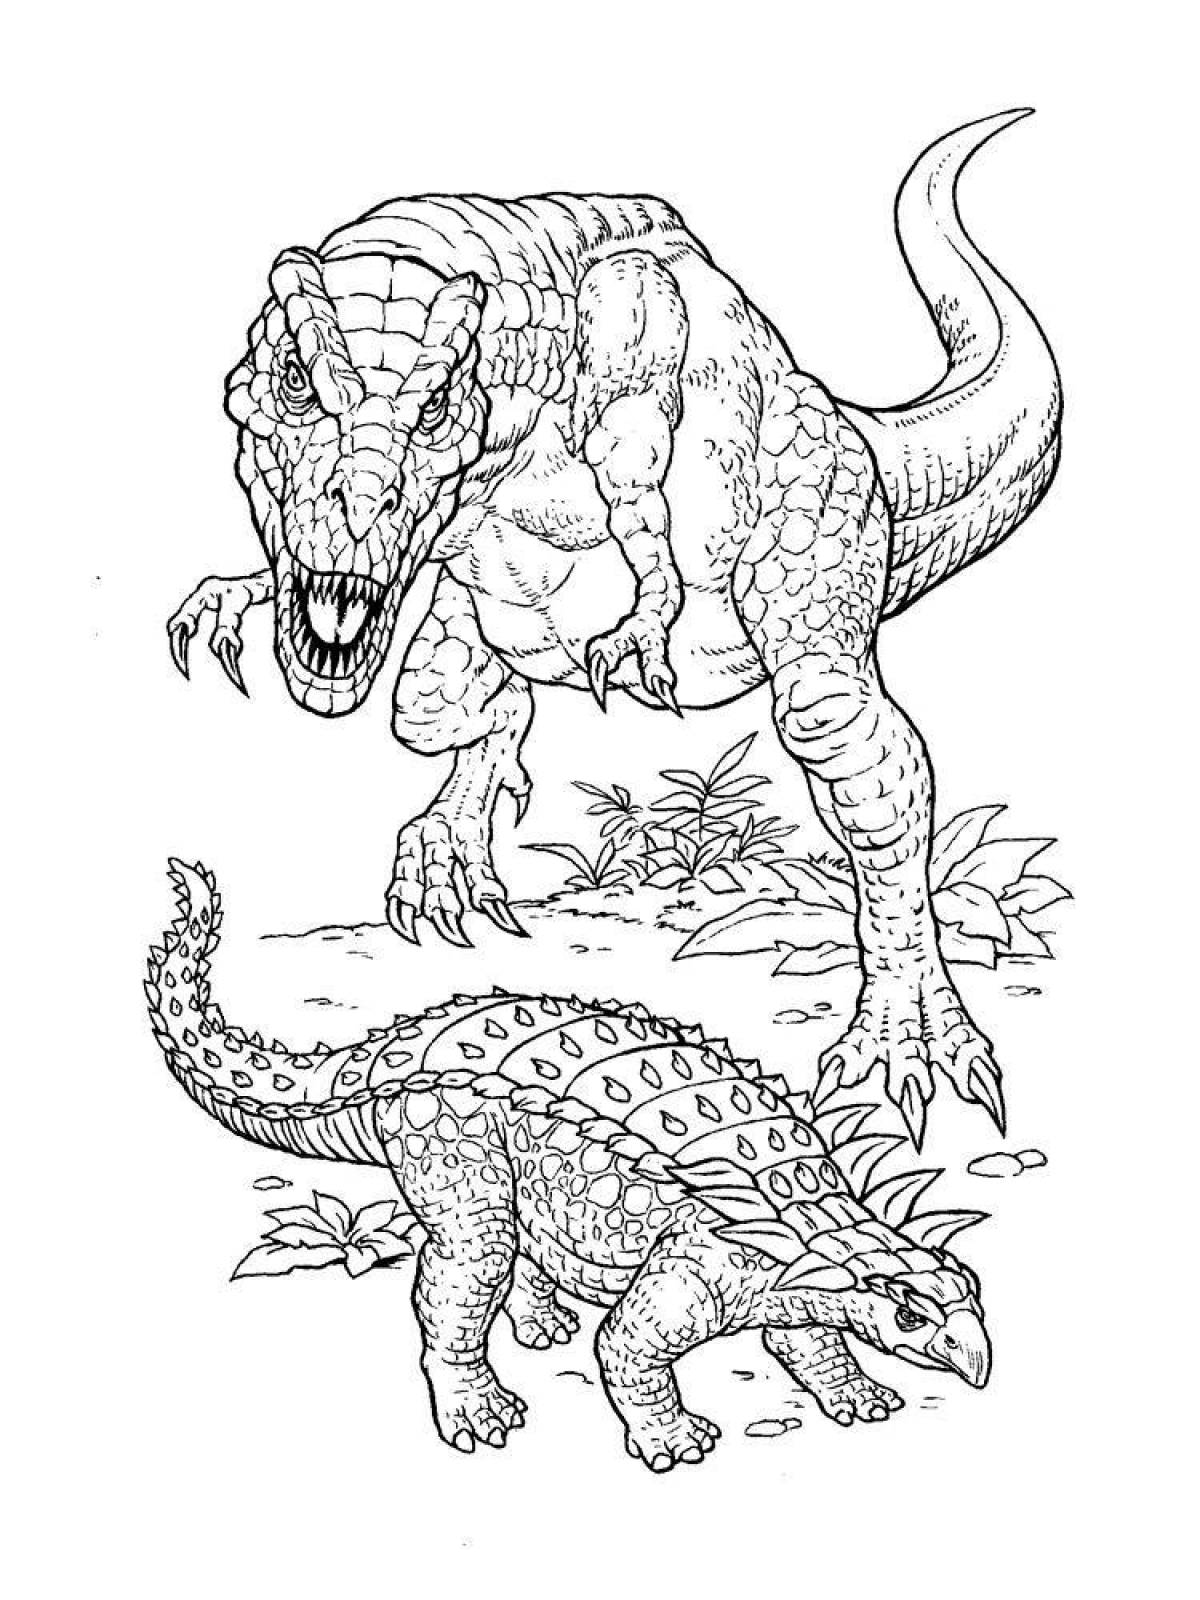 Joyful Tarbosaurus coloring book for kids